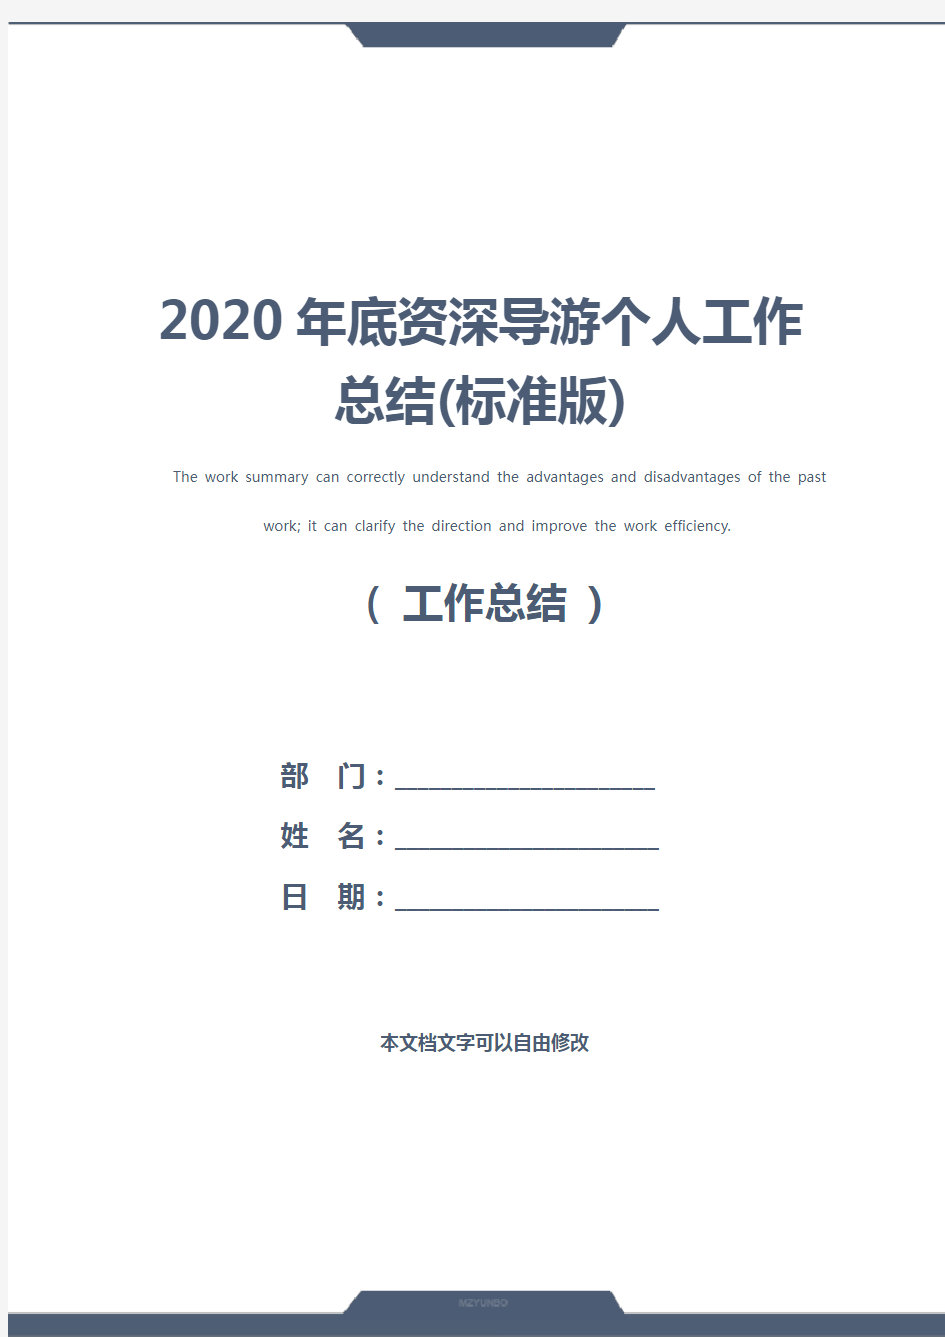 2020年底资深导游个人工作总结(标准版)